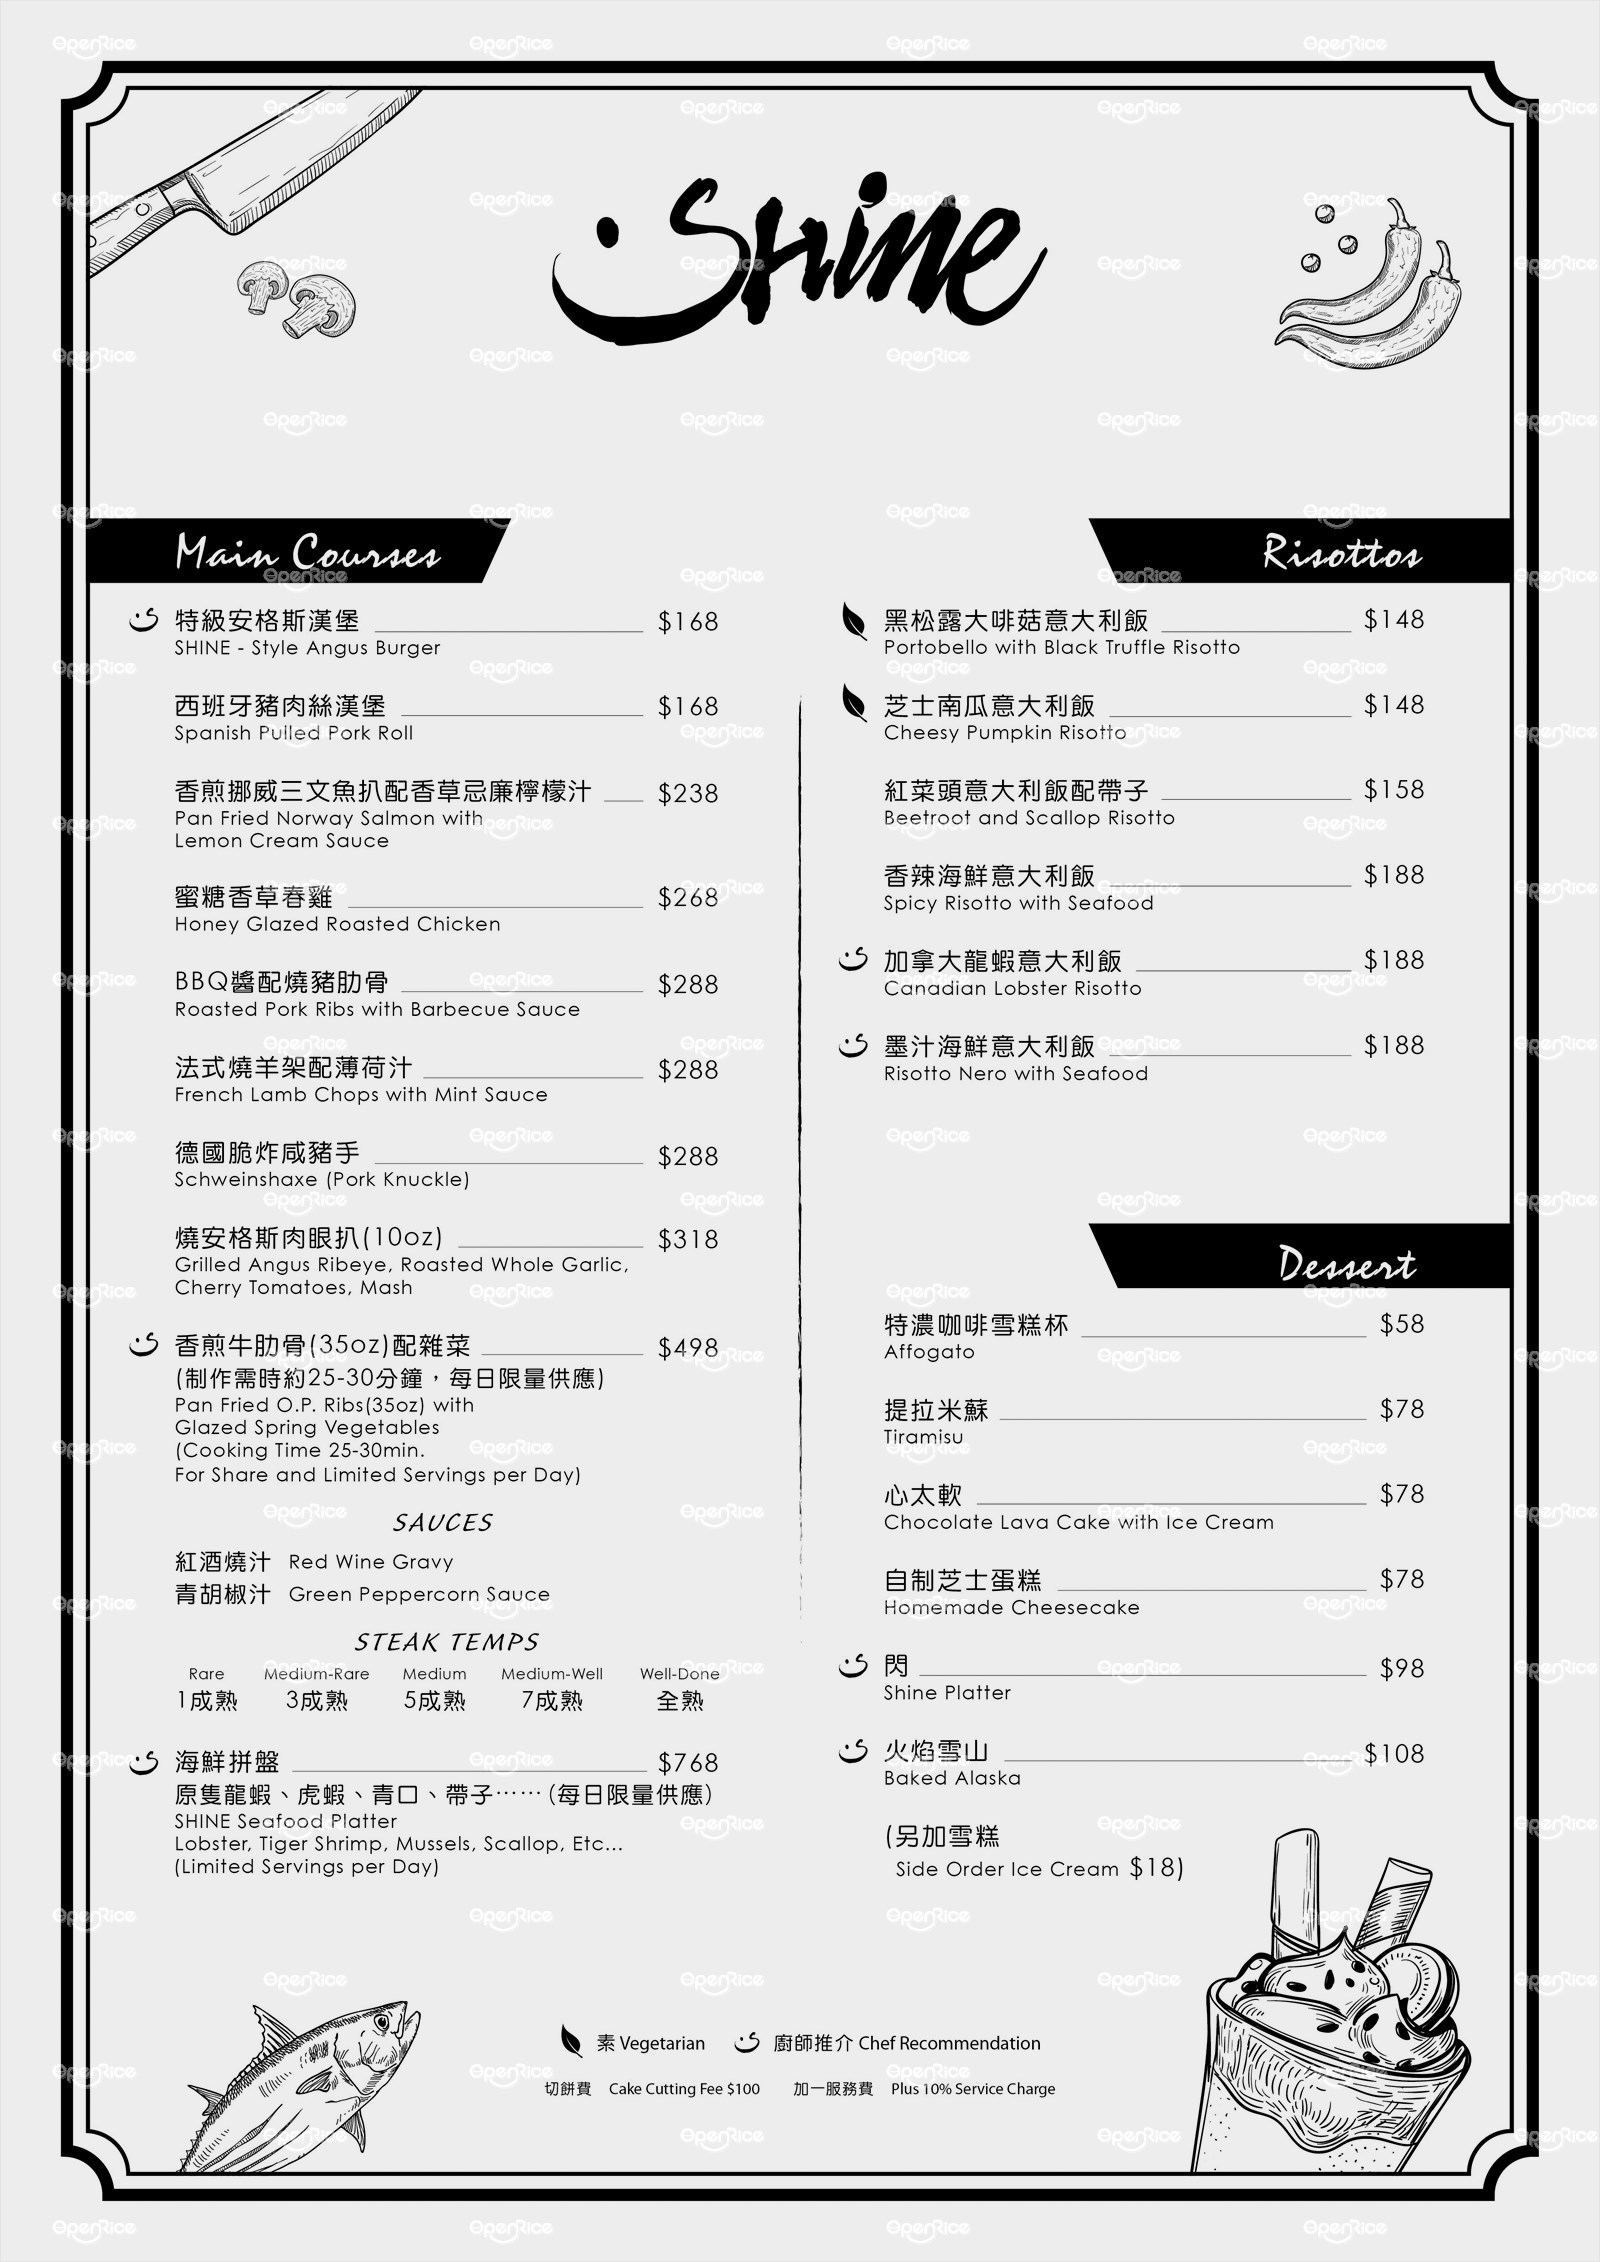 餐厅 香港 尖沙咀 shine 外卖纸/菜单